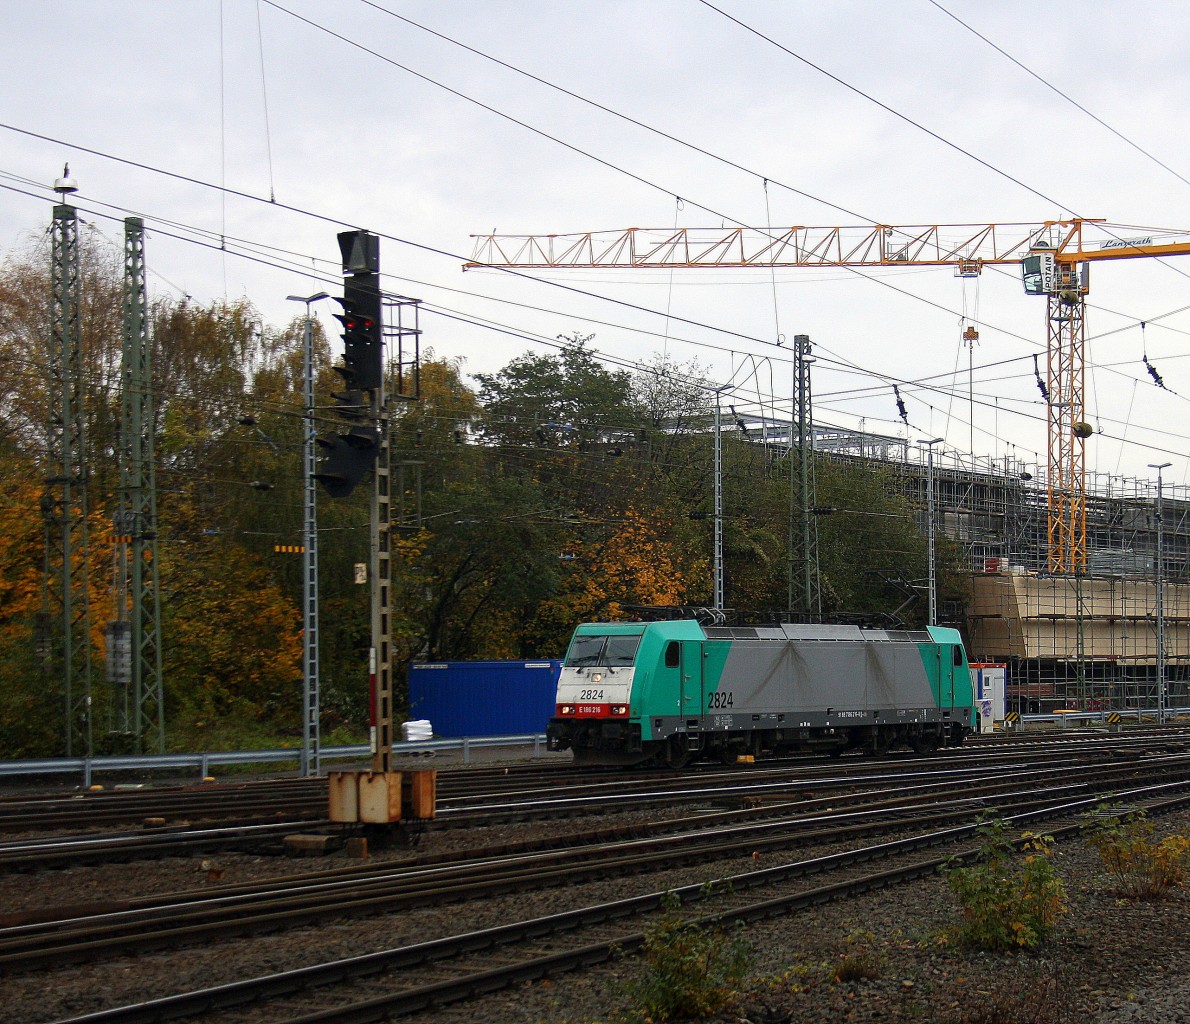 Die Cobra 2824 rangiert in Aachen-West.
Aufgenommen vom Bahnsteig in Aachen-West. 
Bei Sonne und Regenwolken am Vormittag vom 15.11.2014.